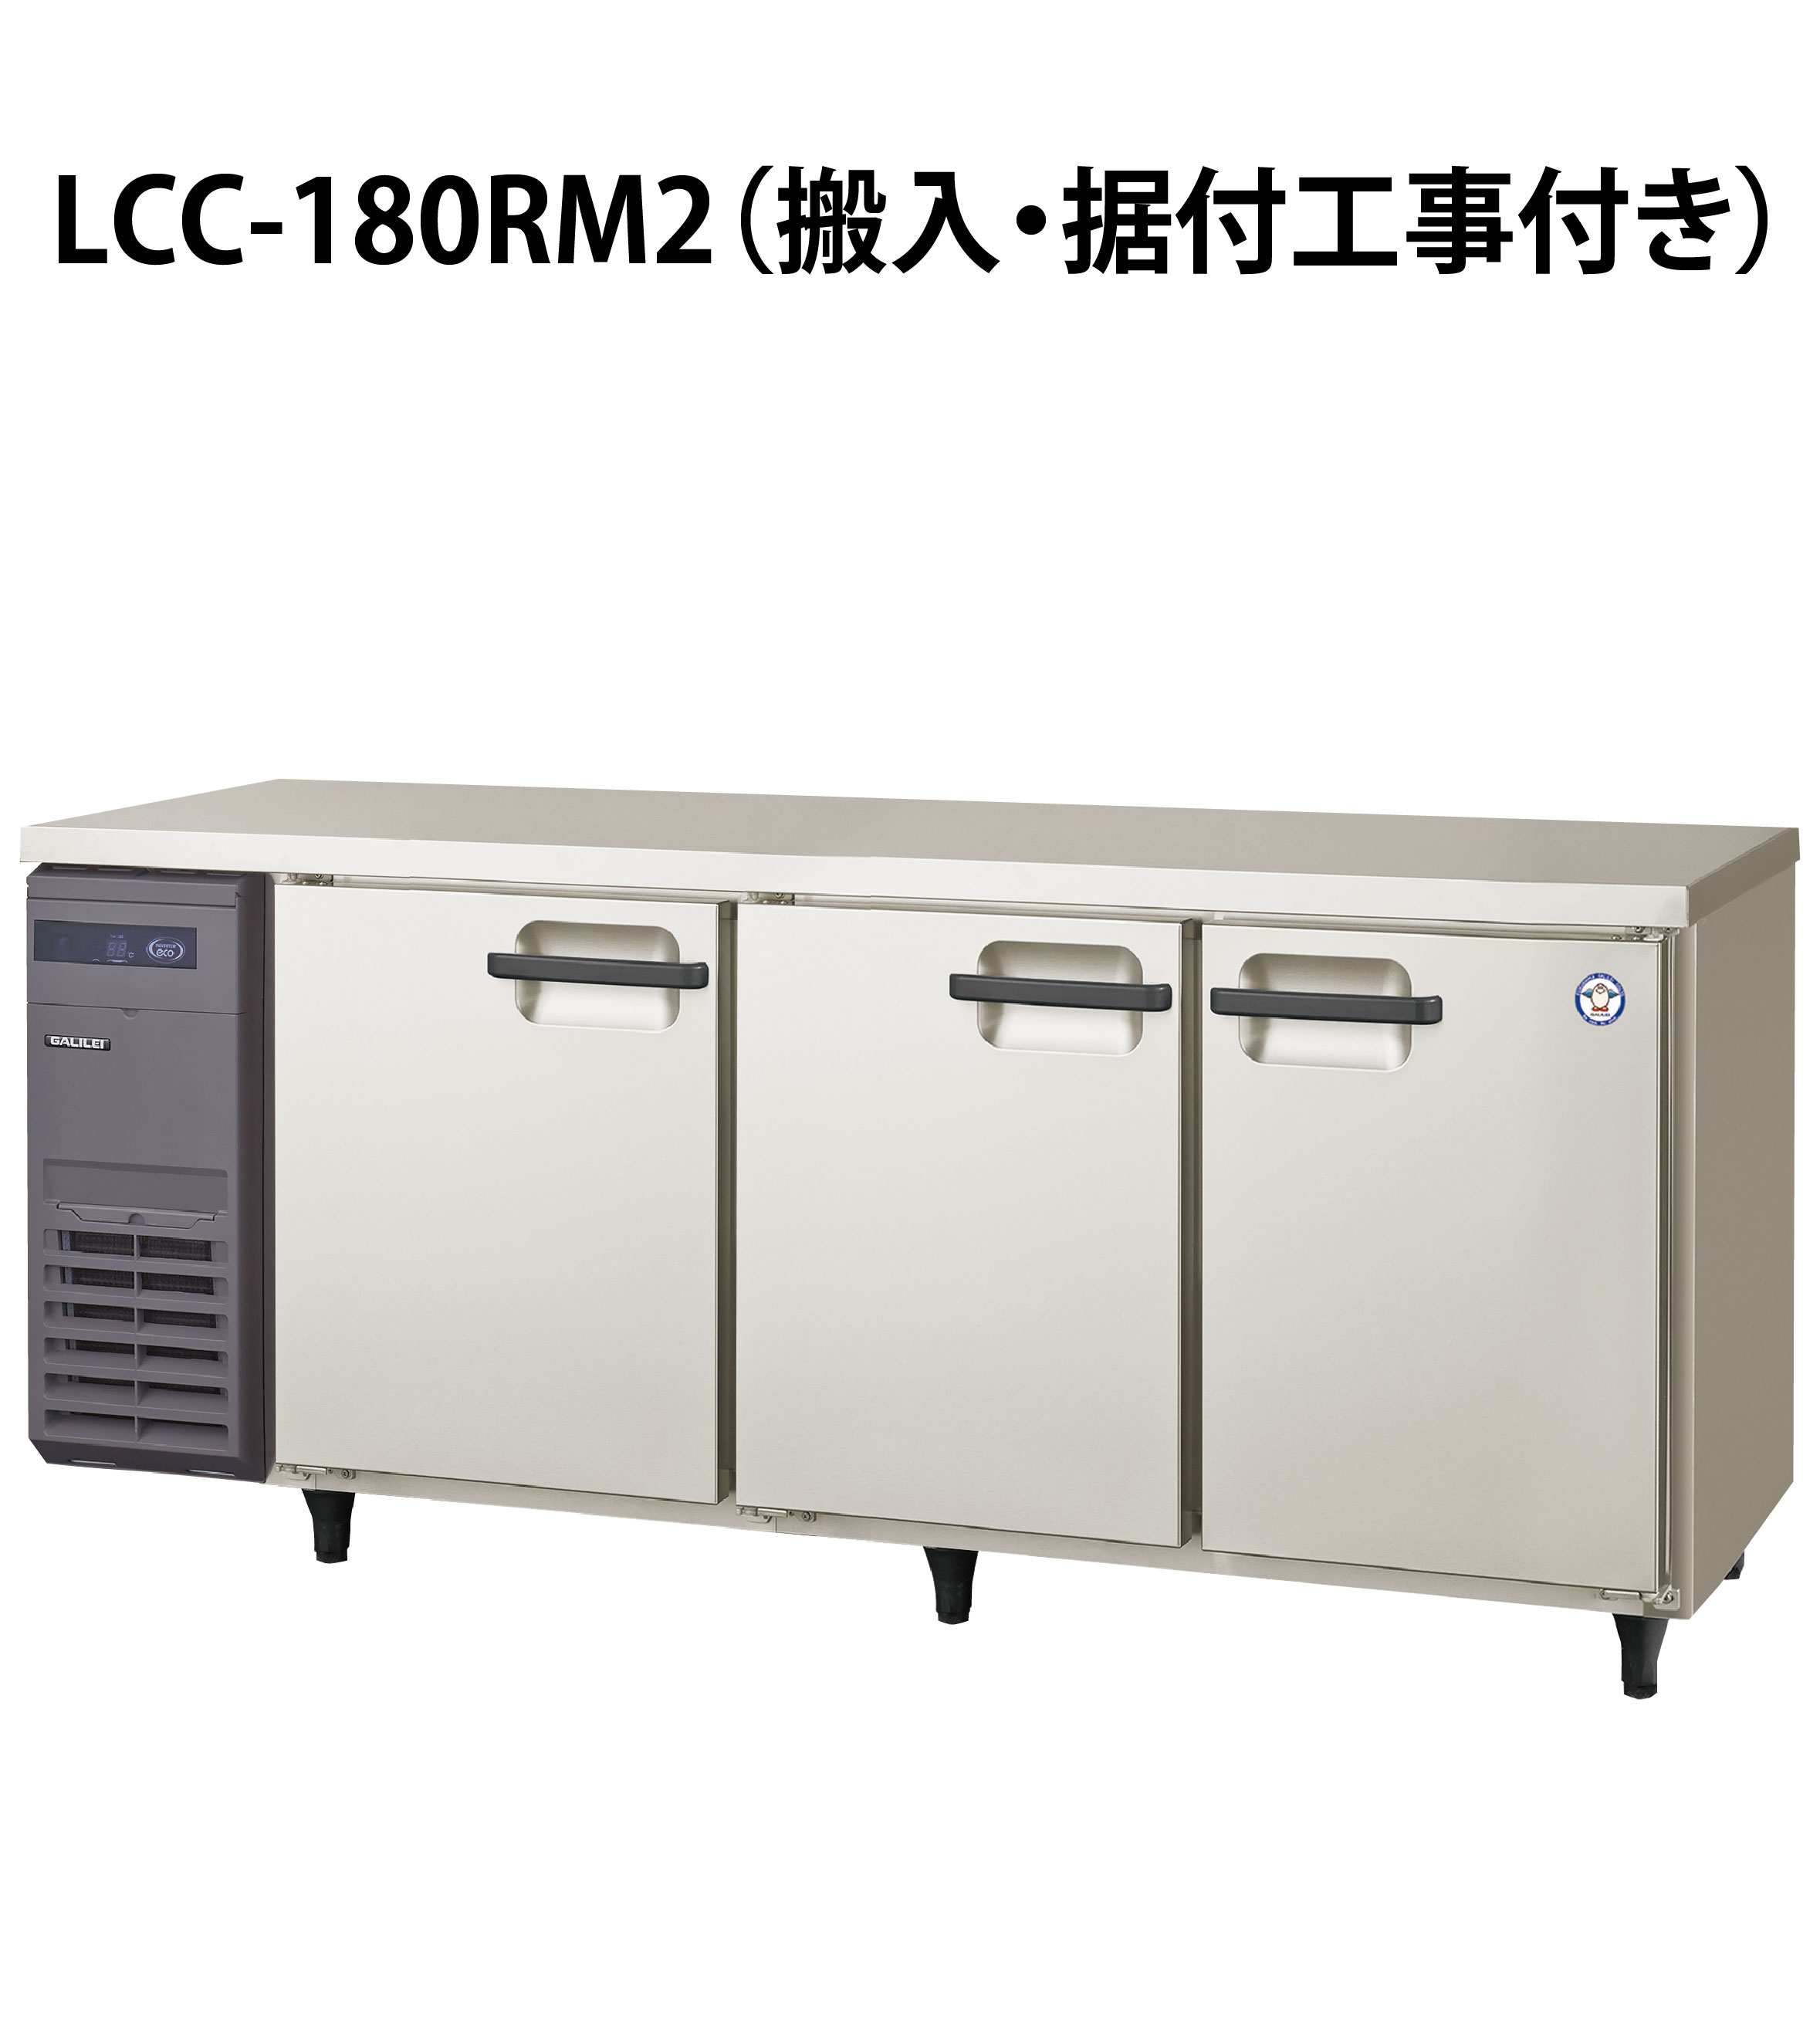 魅力的な価格 Lキッチンドットコムフクシマガリレイ コールドテーブル冷蔵庫 LCC-180RM2-F センターフリータイプ 単相100V 業務用 新品  送料無料